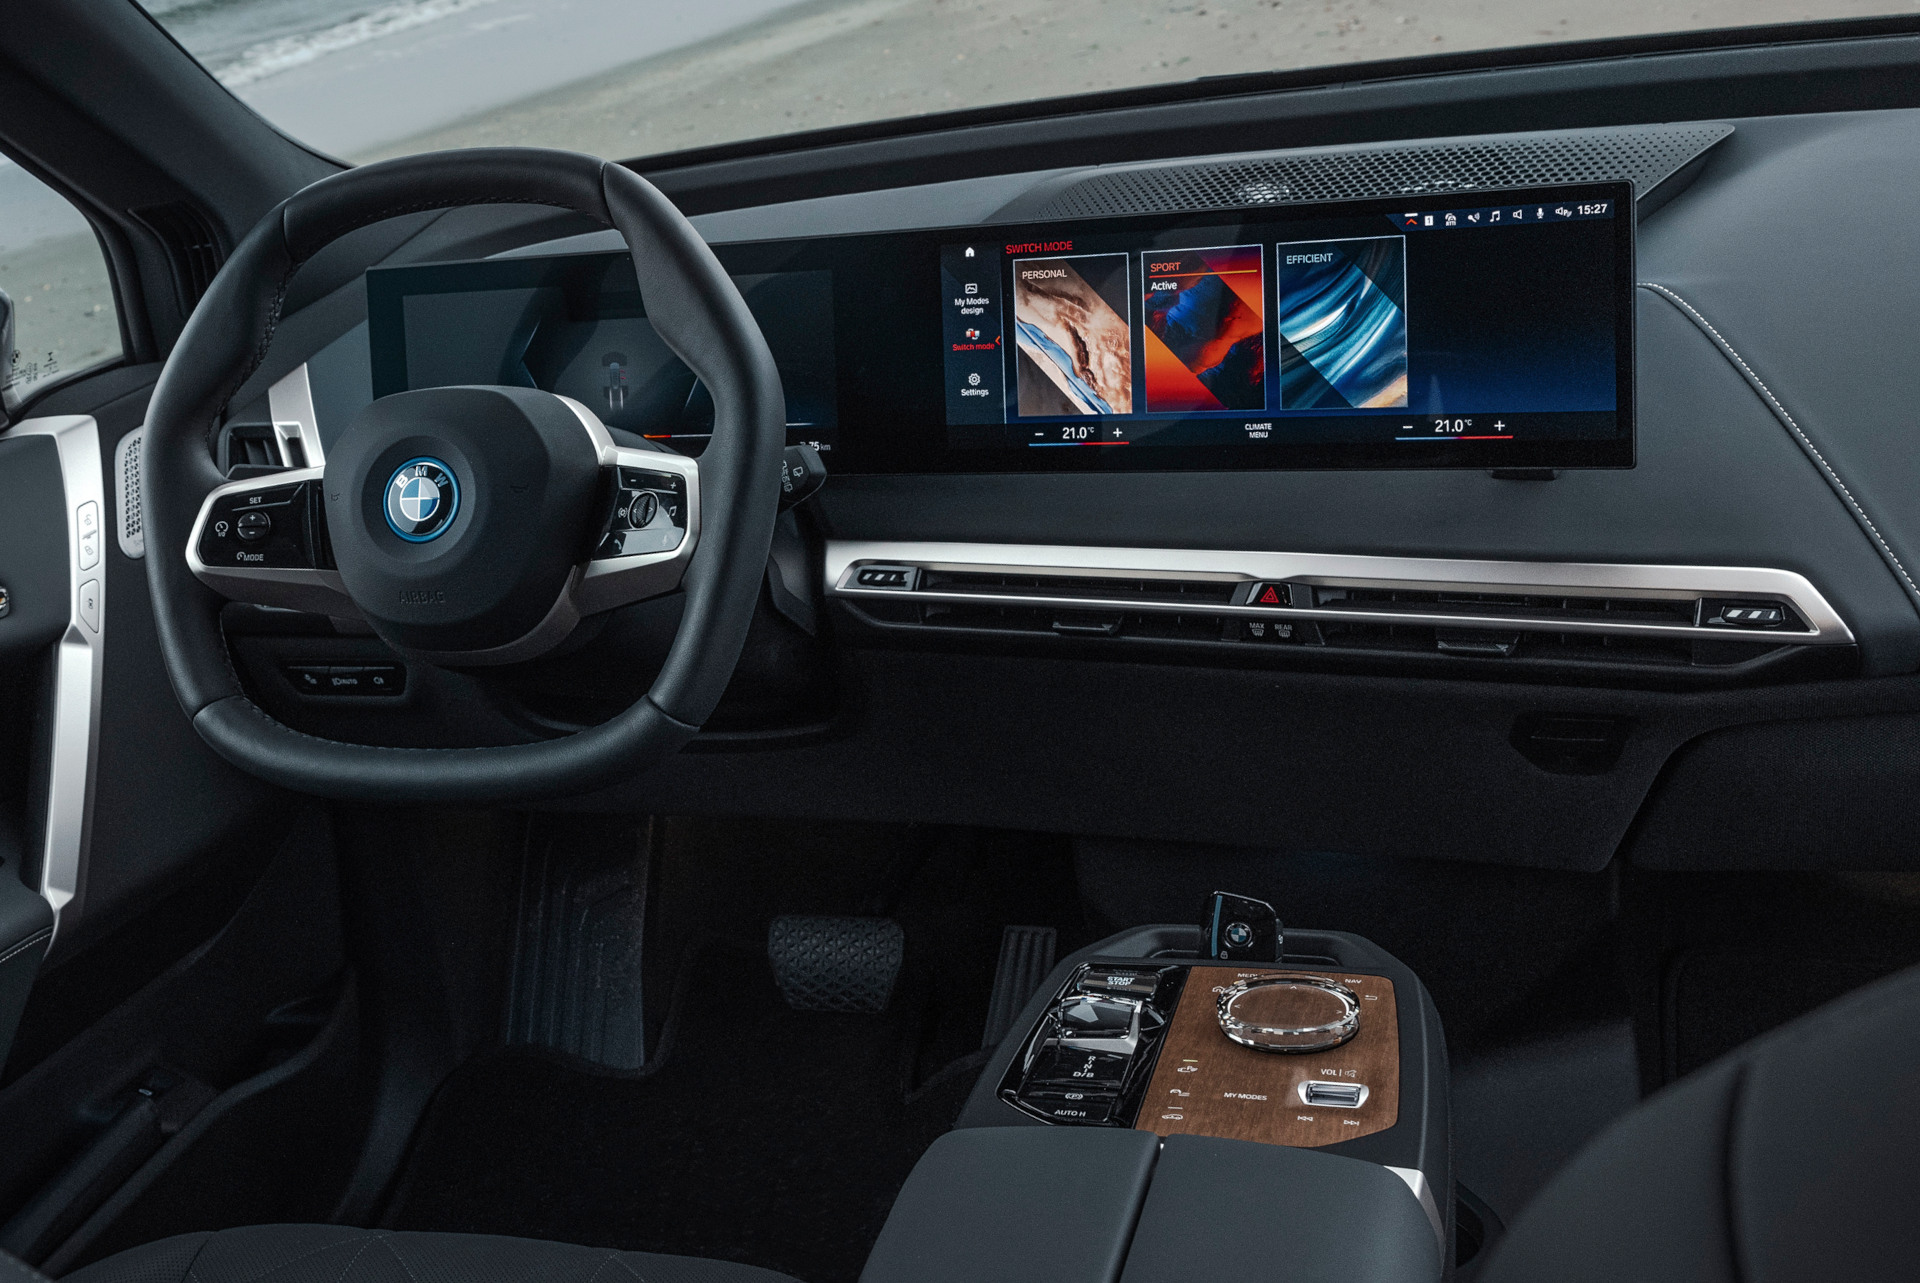 BMW X3 G45 ErlkönigFotos zeigen großen iDriveController